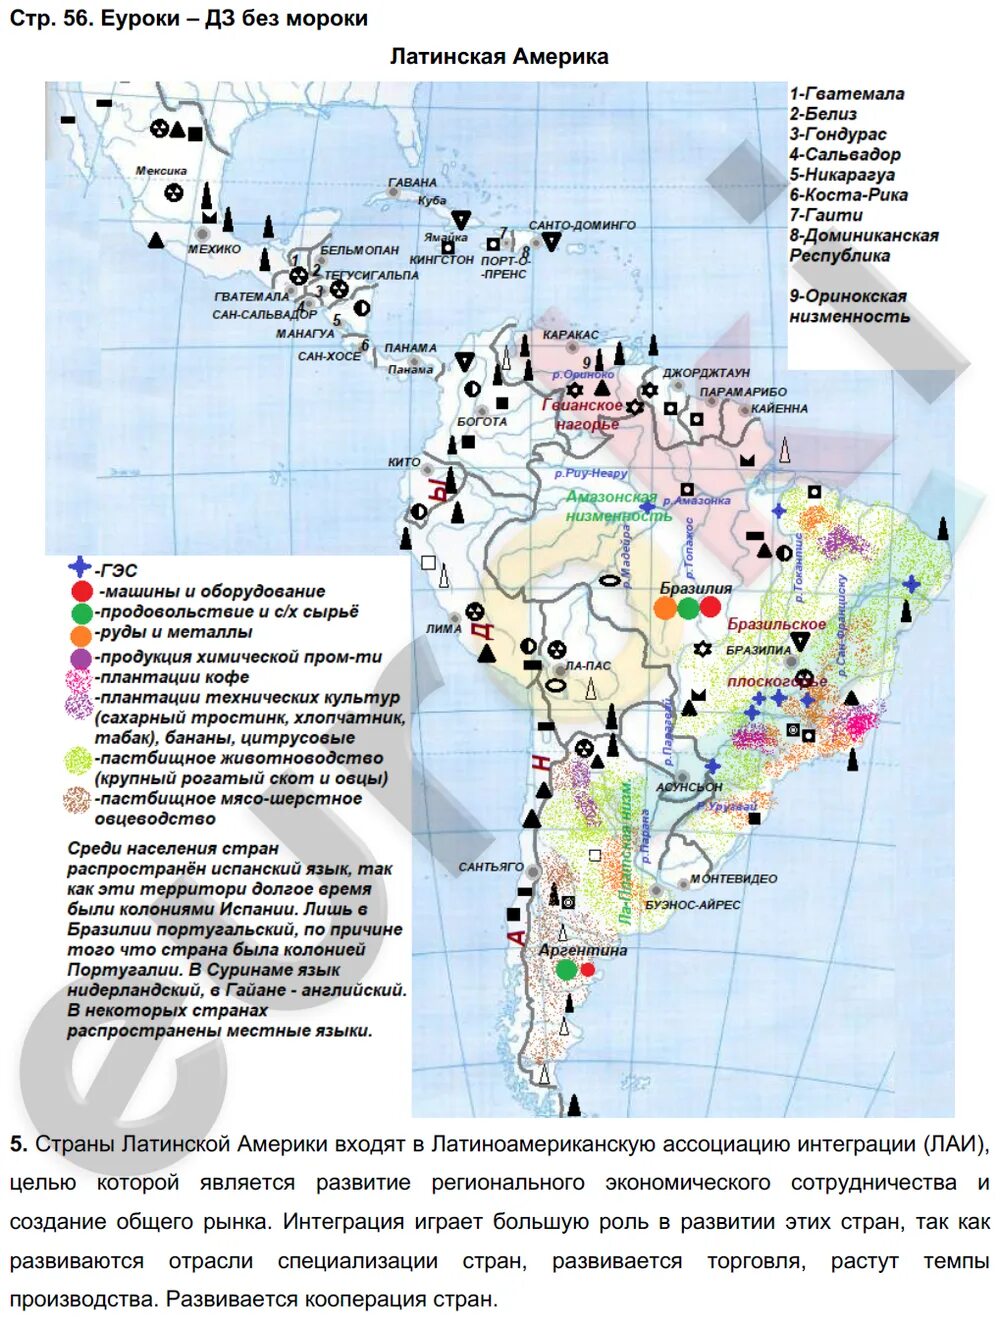 Контурная карта 10-11 класс география латинская Америка. Латинская Америка контурная карта 10-11 класс гдз. Контурные карты 10 класс география латинская Америка. Гдз по контурным картам латинская Америка 11 класс.